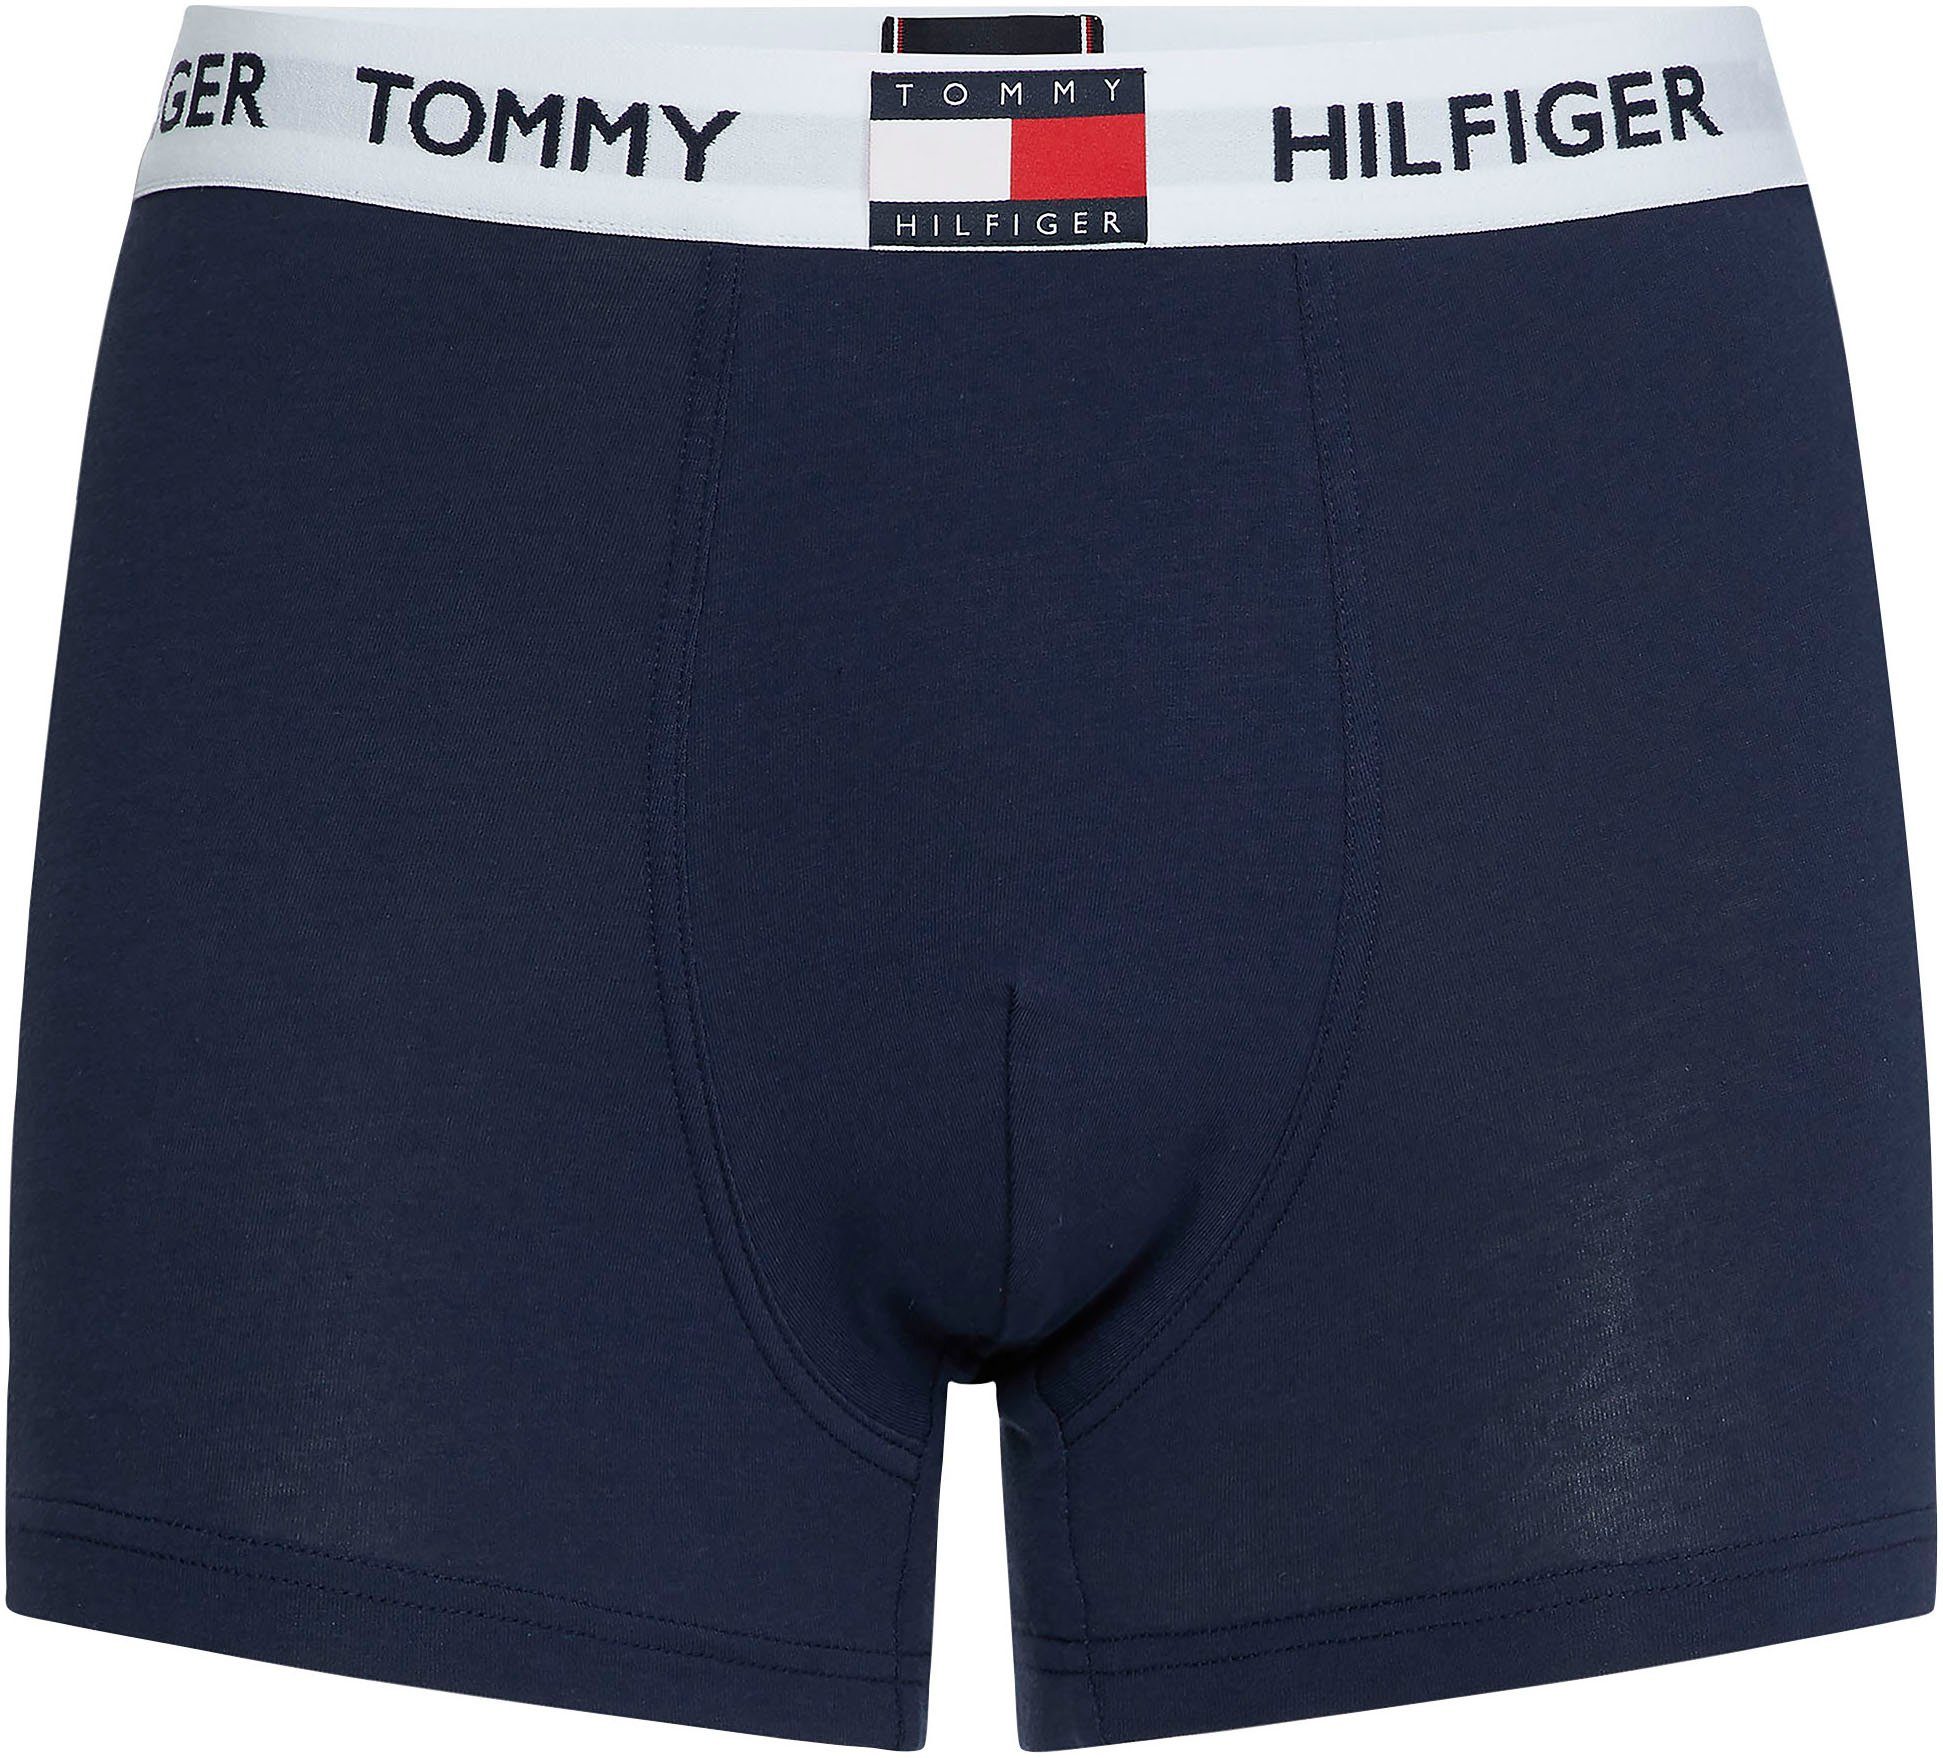 NAVY BLAZER Hilfiger Tommy Hilfiger Tommy mit Underwear TRUNK Logo-Elastiktape Trunk